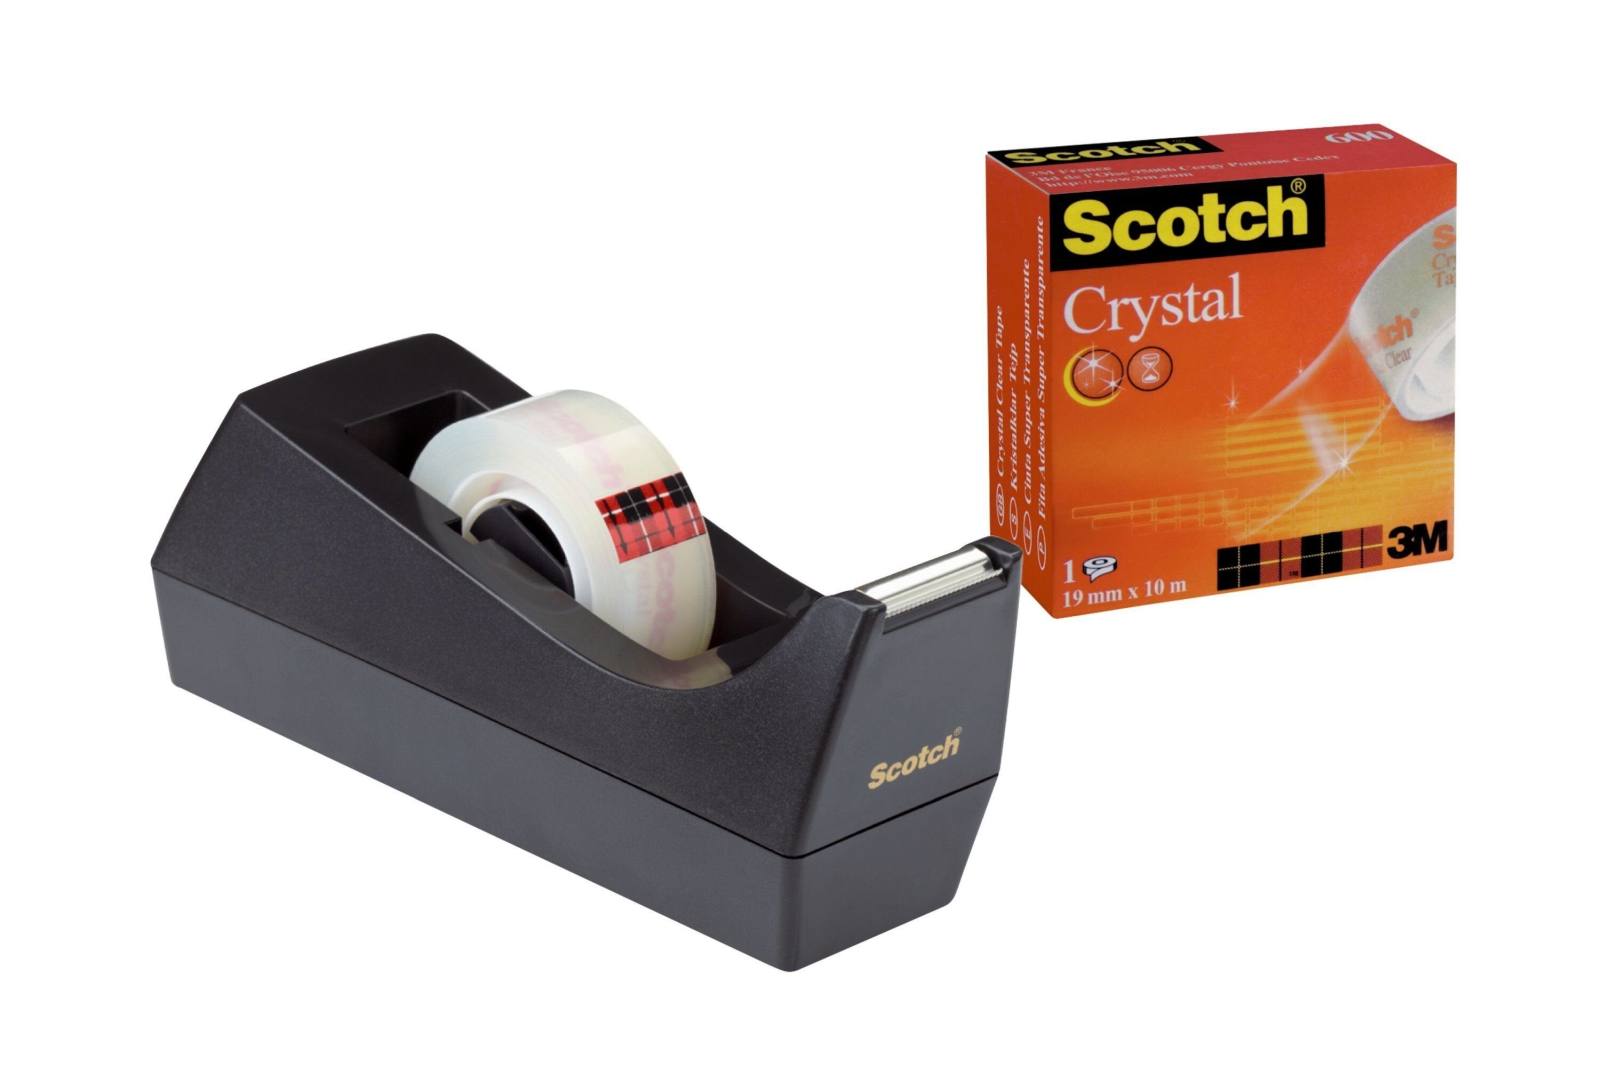 3M Scotch tafeldispenser 83980, 6,5 x 7 x 15 cm, zwart, 1 dispenser, 1 rol plakband